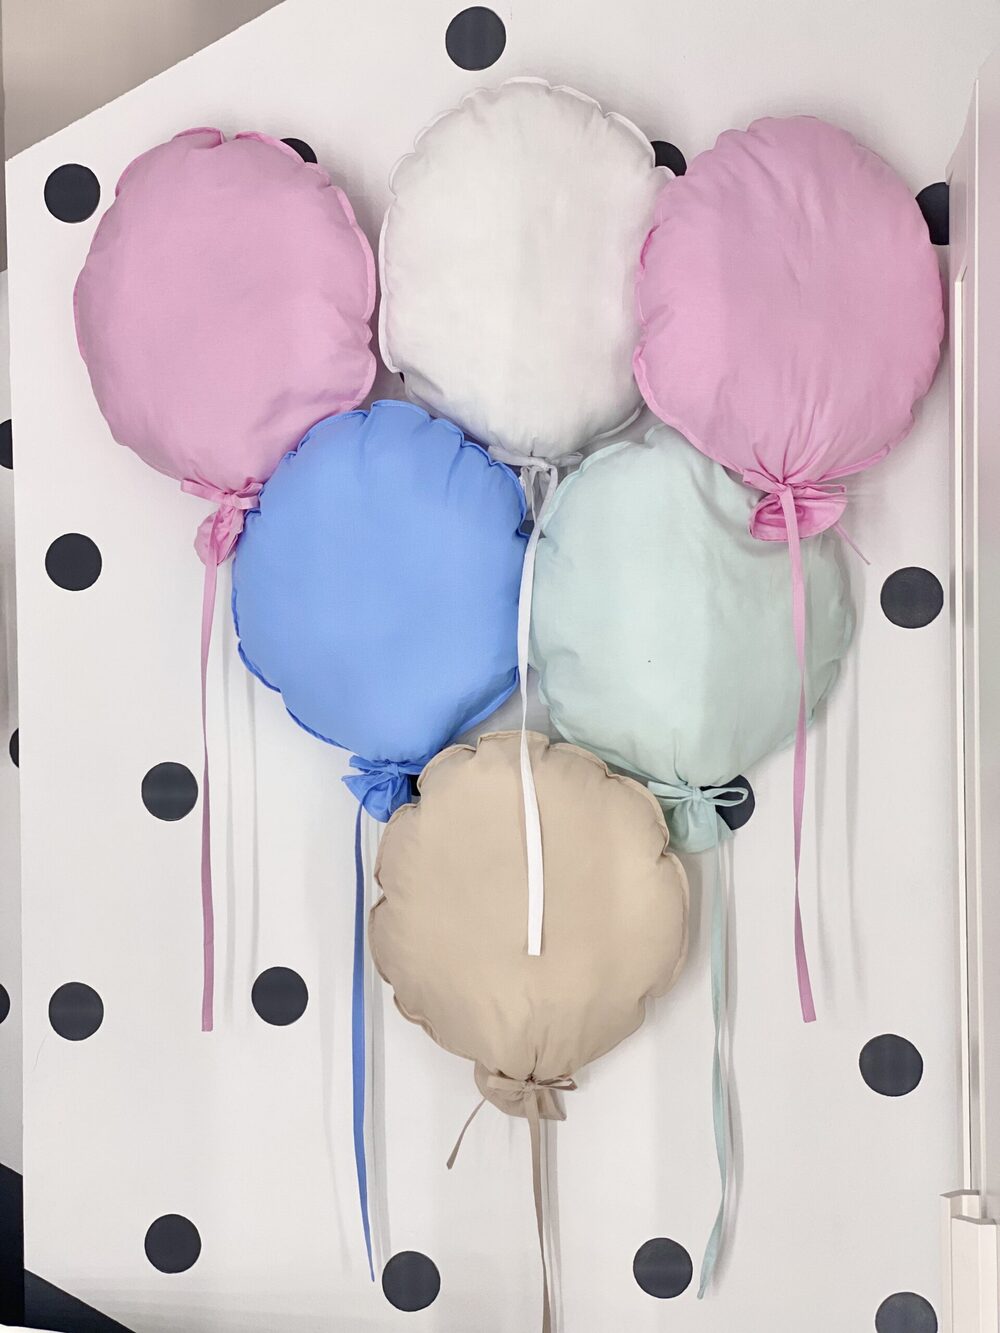 Children's Decorative Pillows Wall Balloons